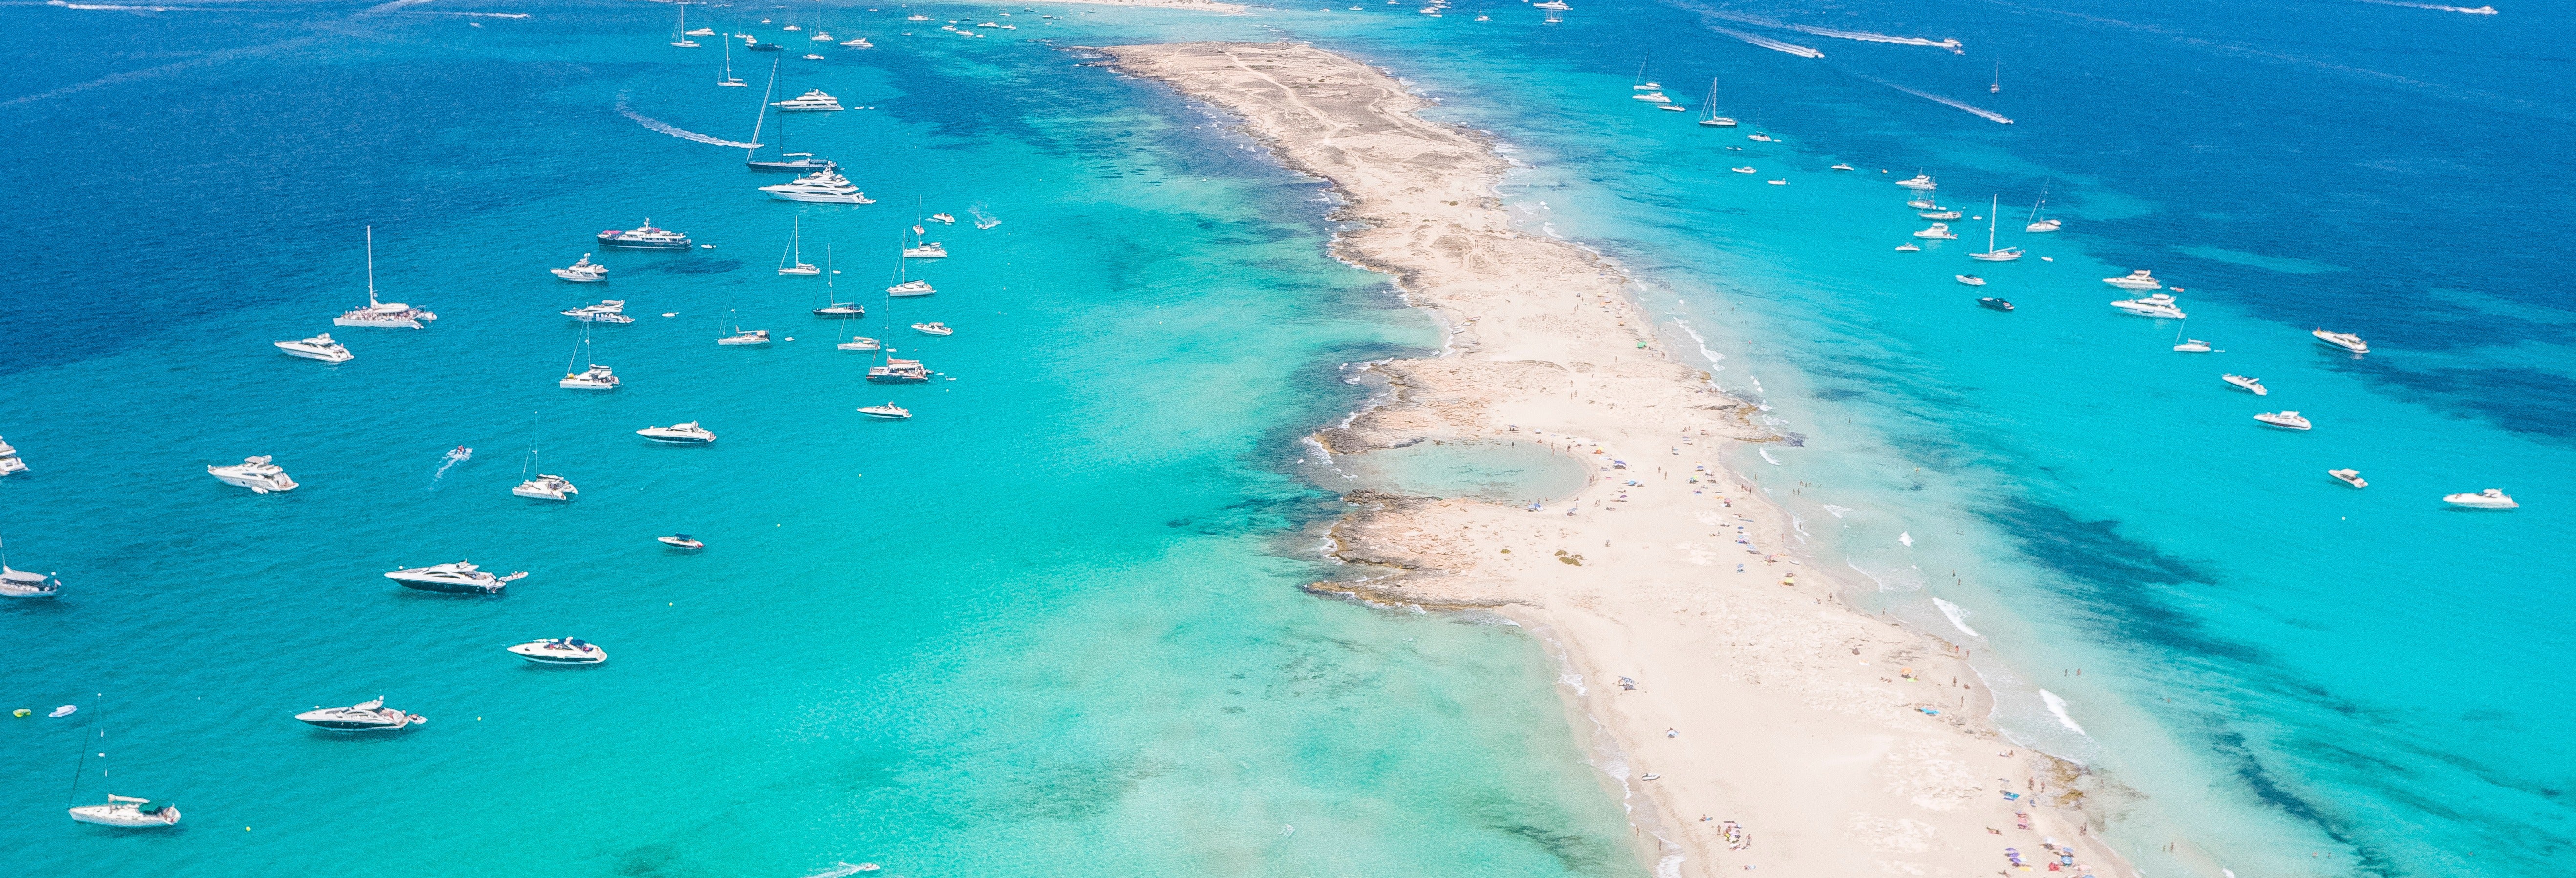 Excursão a Formentera, Espalmador e Ses Illetes de barco em praia d'en Bossa